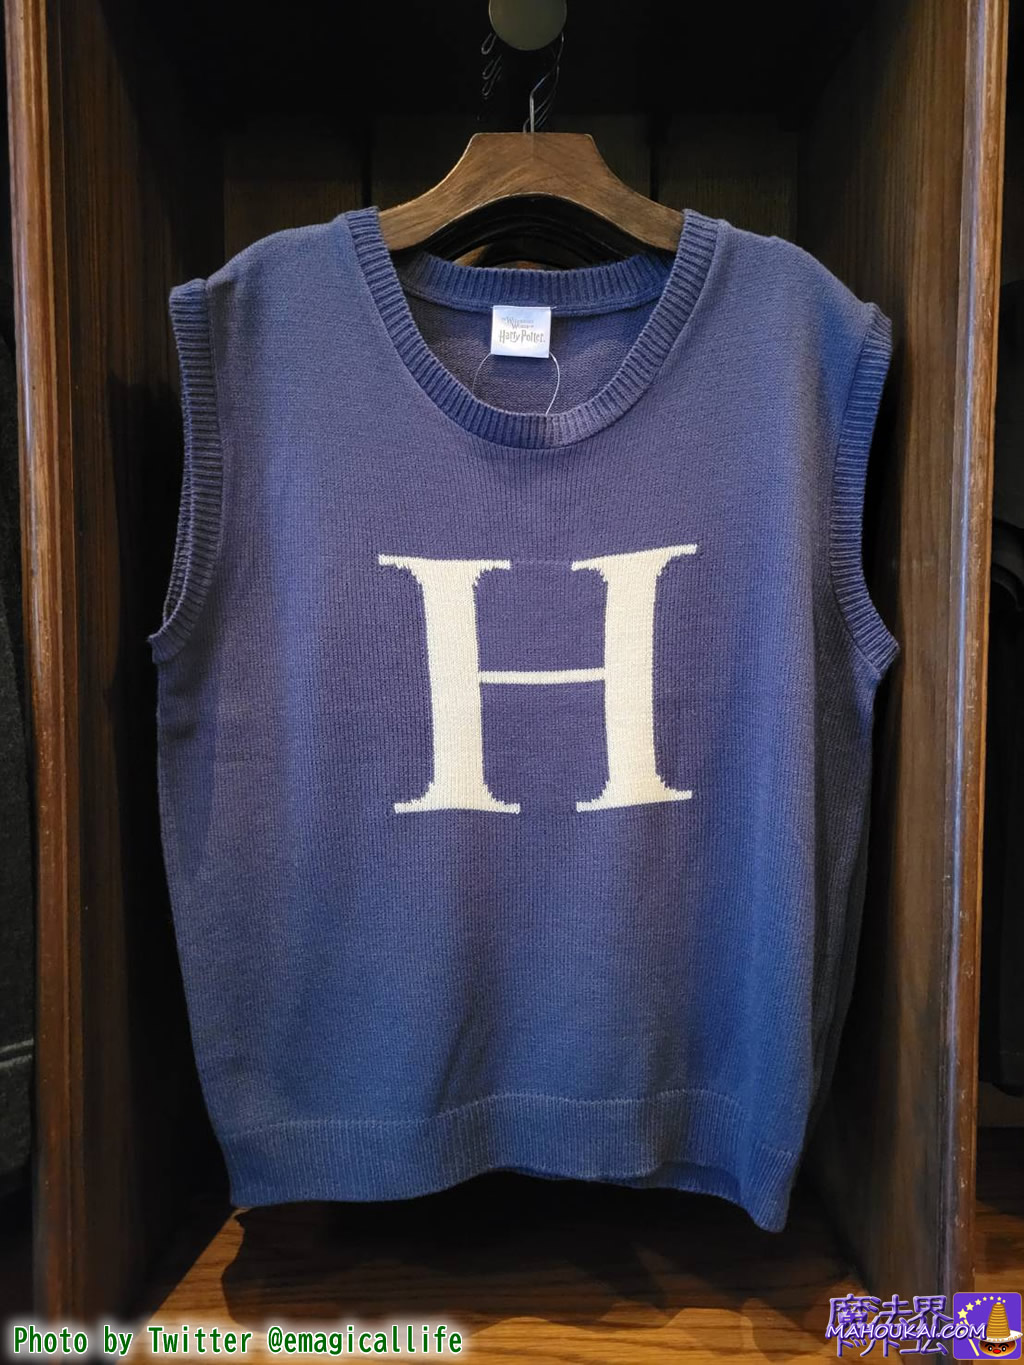 ハリー・ポッターの『H』セーターをイメージしたベスト（Tank Top）USJ 「ハリー・ポッター エリア」